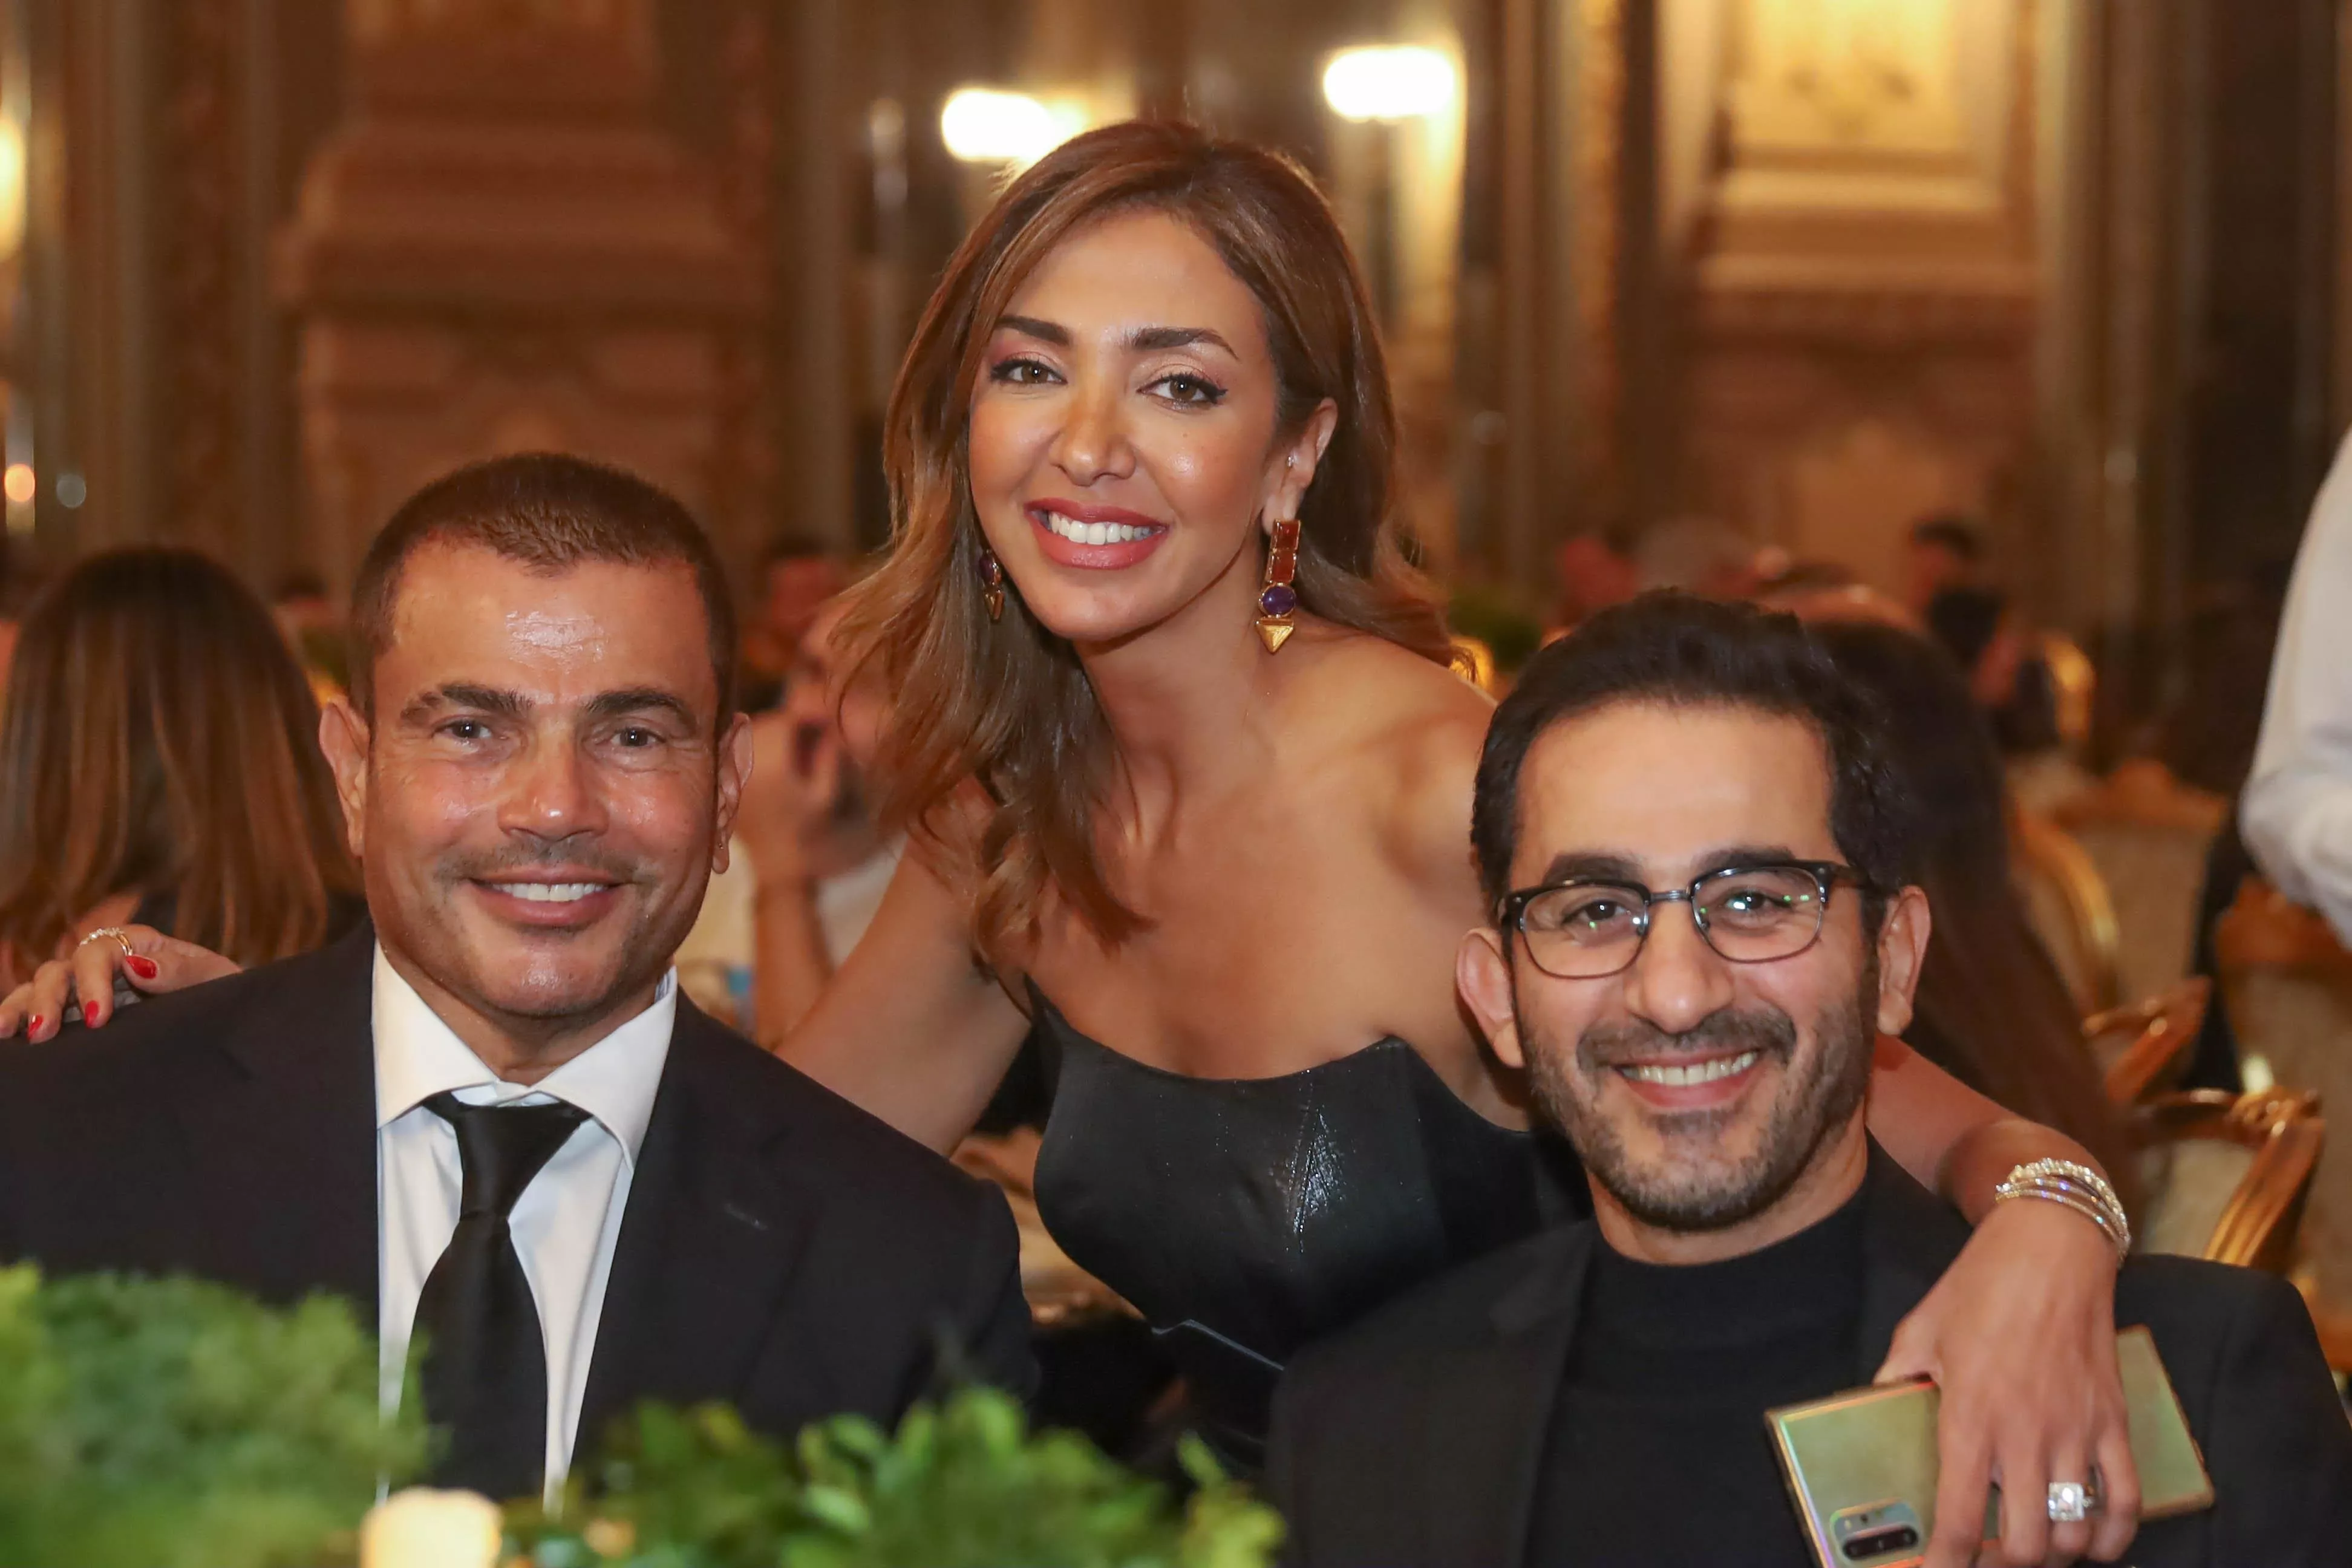 للمرّة الأولى، تعاون يجمع بين Elie Saab وشركة إعمار في مصر من خلال حفل في قصر عابدين